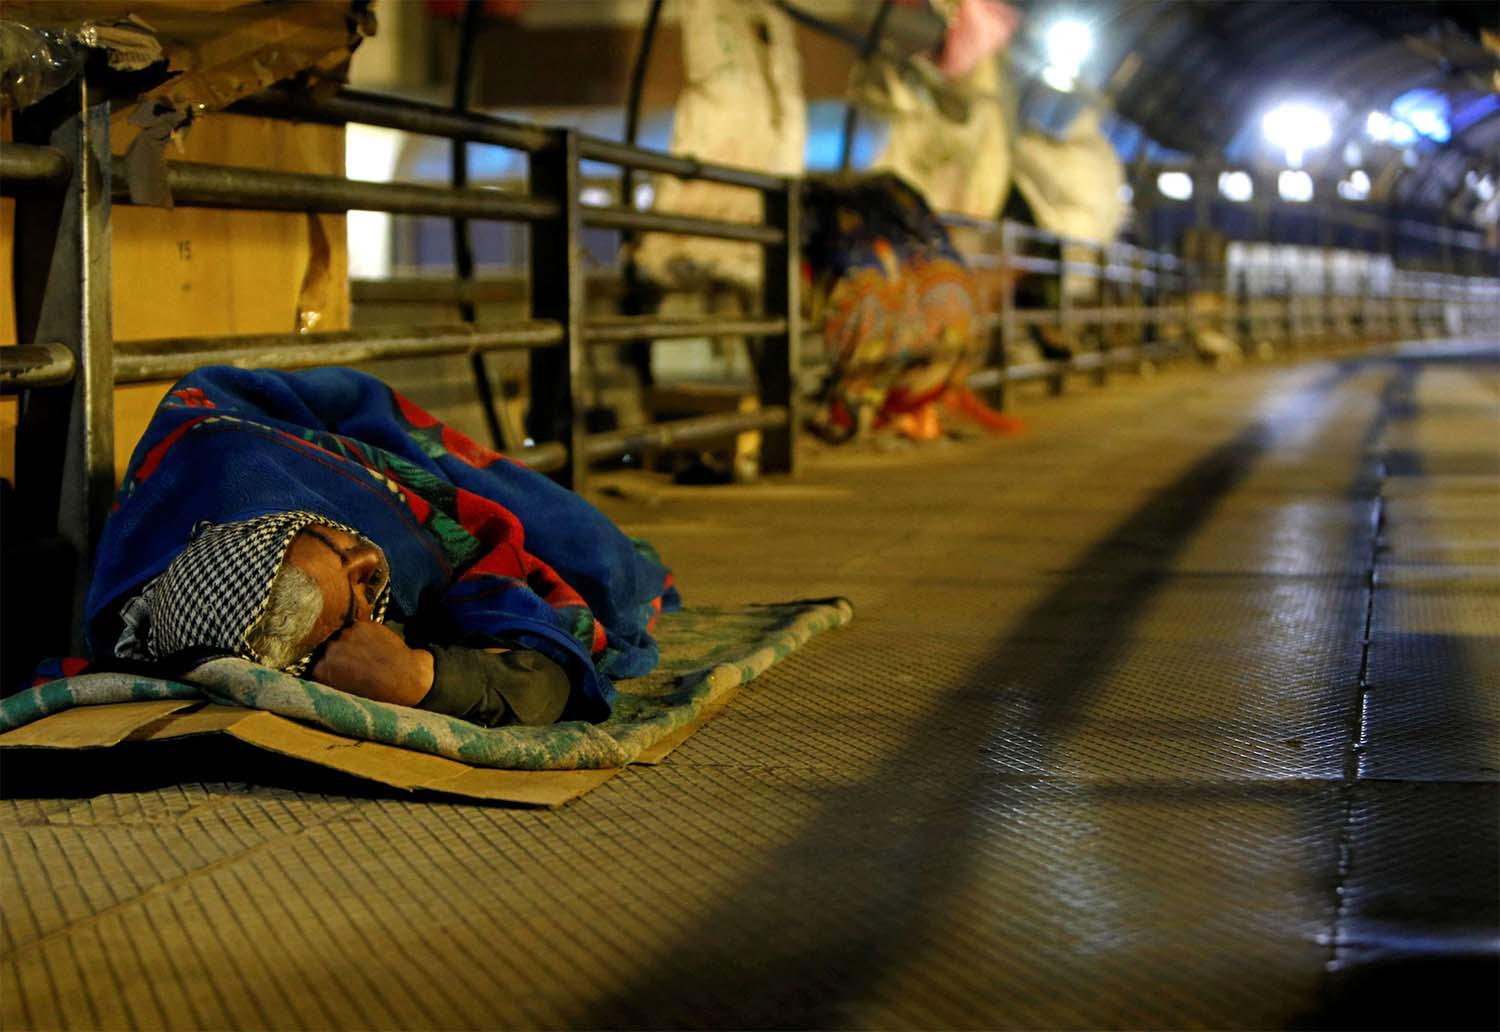 A homeless man sleeps on a pedestrian bridge in Cairo